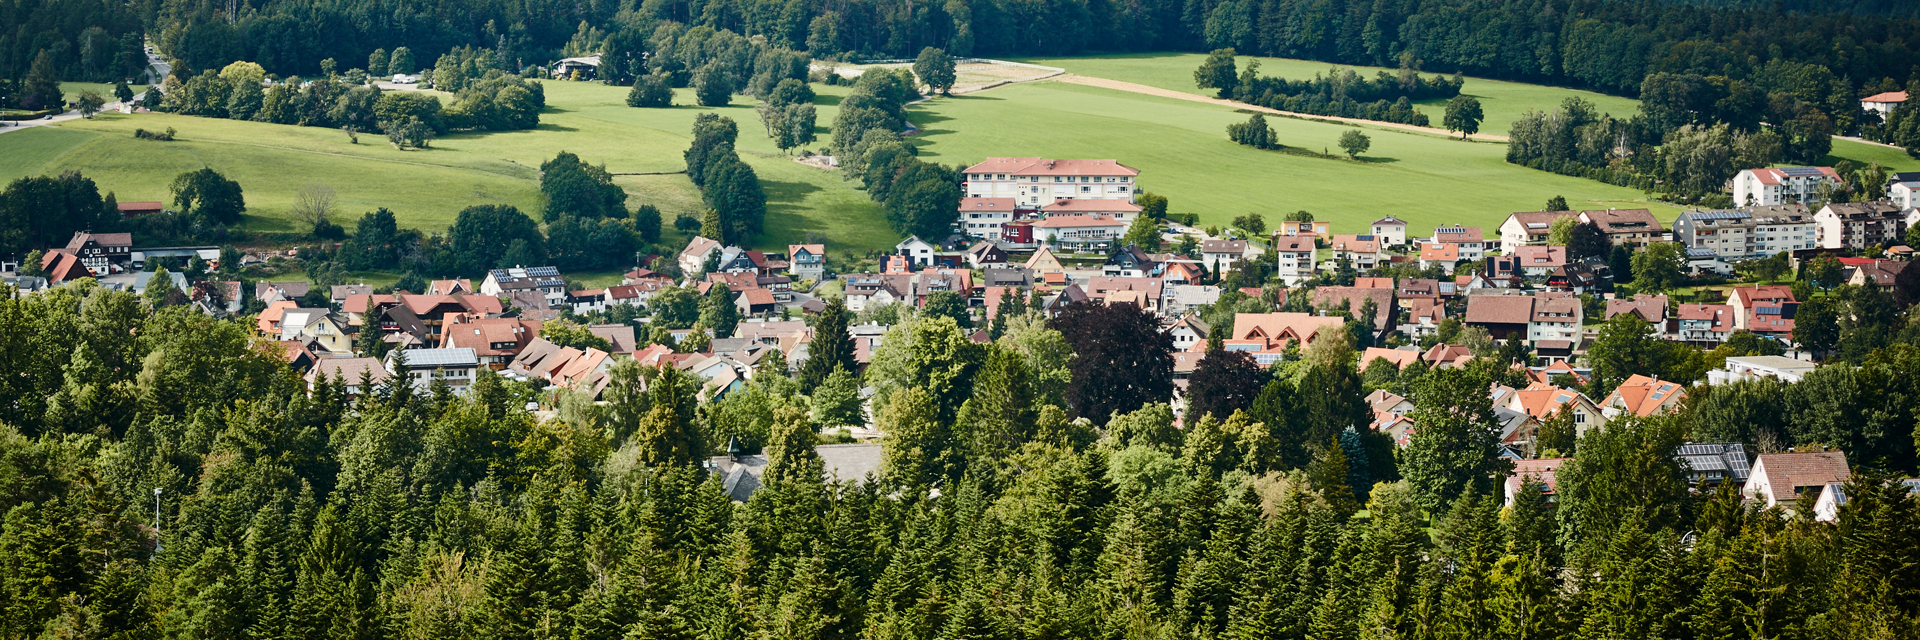 Bild: Das Gebäude der Kinderklinik Schömberg, eingebettet in die Natur und die Ortschaft Schömberg